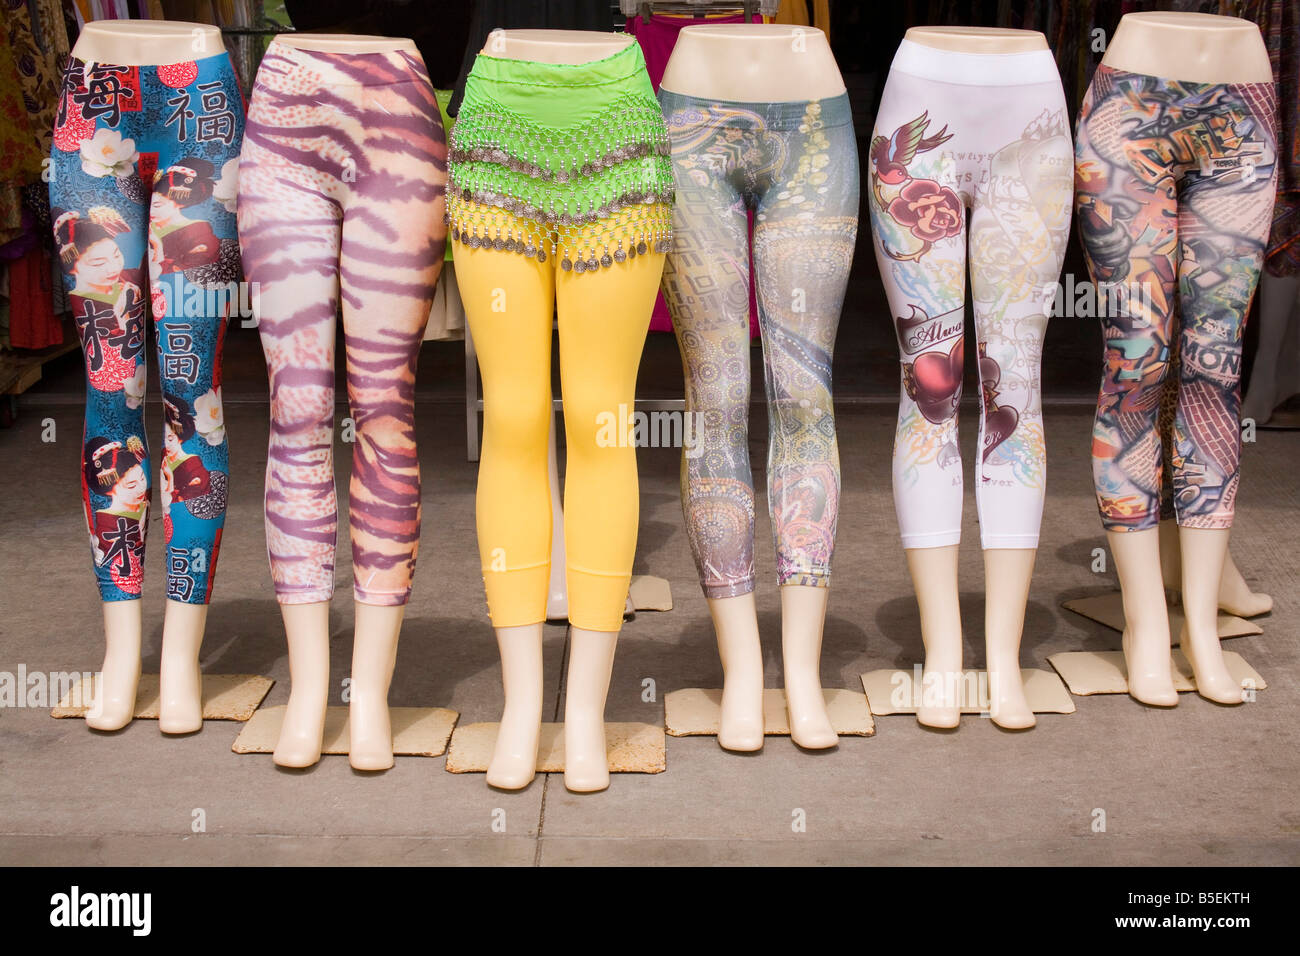 Un groupe de jambes mannequin affiché à l'extérieur d'un magasin de vêtements décontractés, chacune portant une autre paire de collants ou leggings colorés Banque D'Images